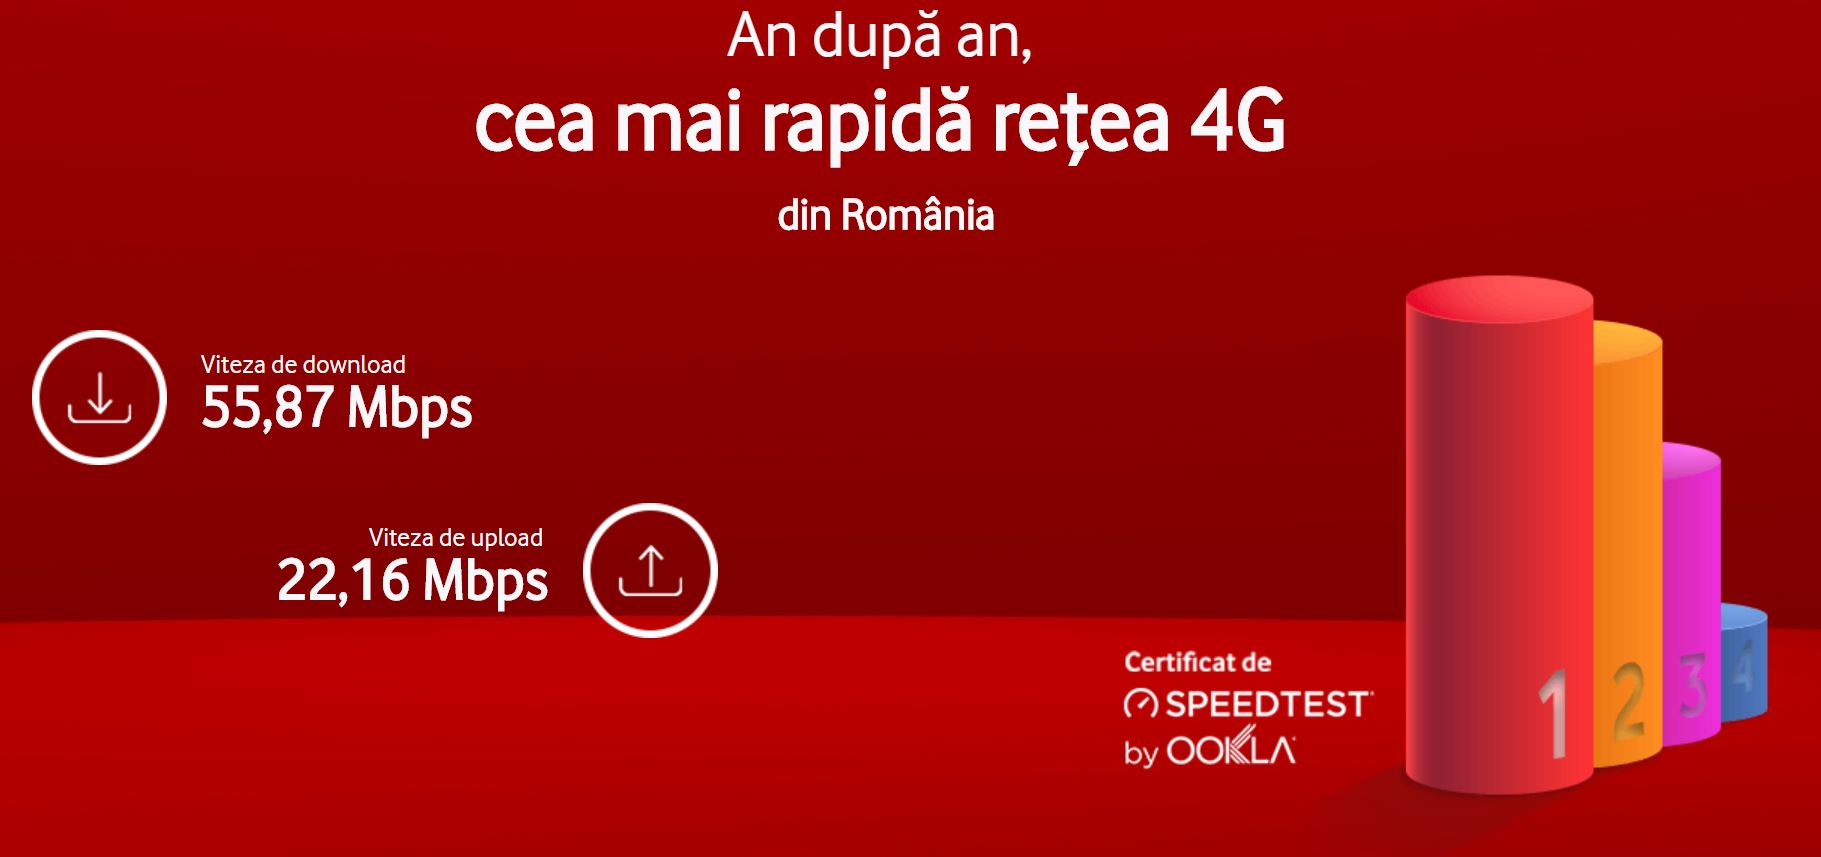 Vodafone Romania are cea mai rapida retea mobila de generatie 4G din Romania, potrivit datelor Ookla Speedtest din 2017